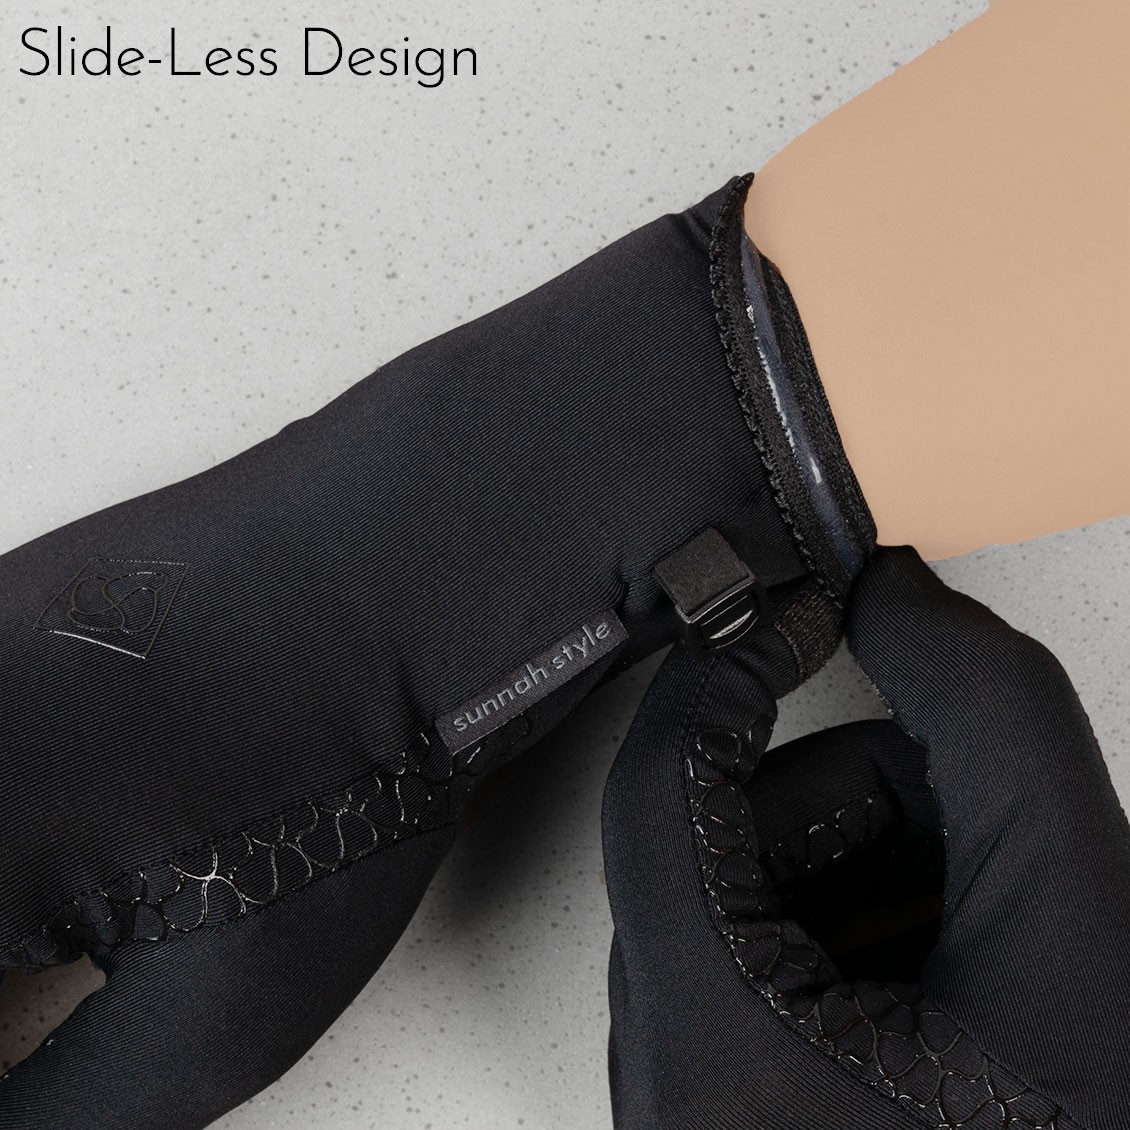 Sunnah Style Esteem Signature Gloves v2 Wrist Length Slide-Less Design